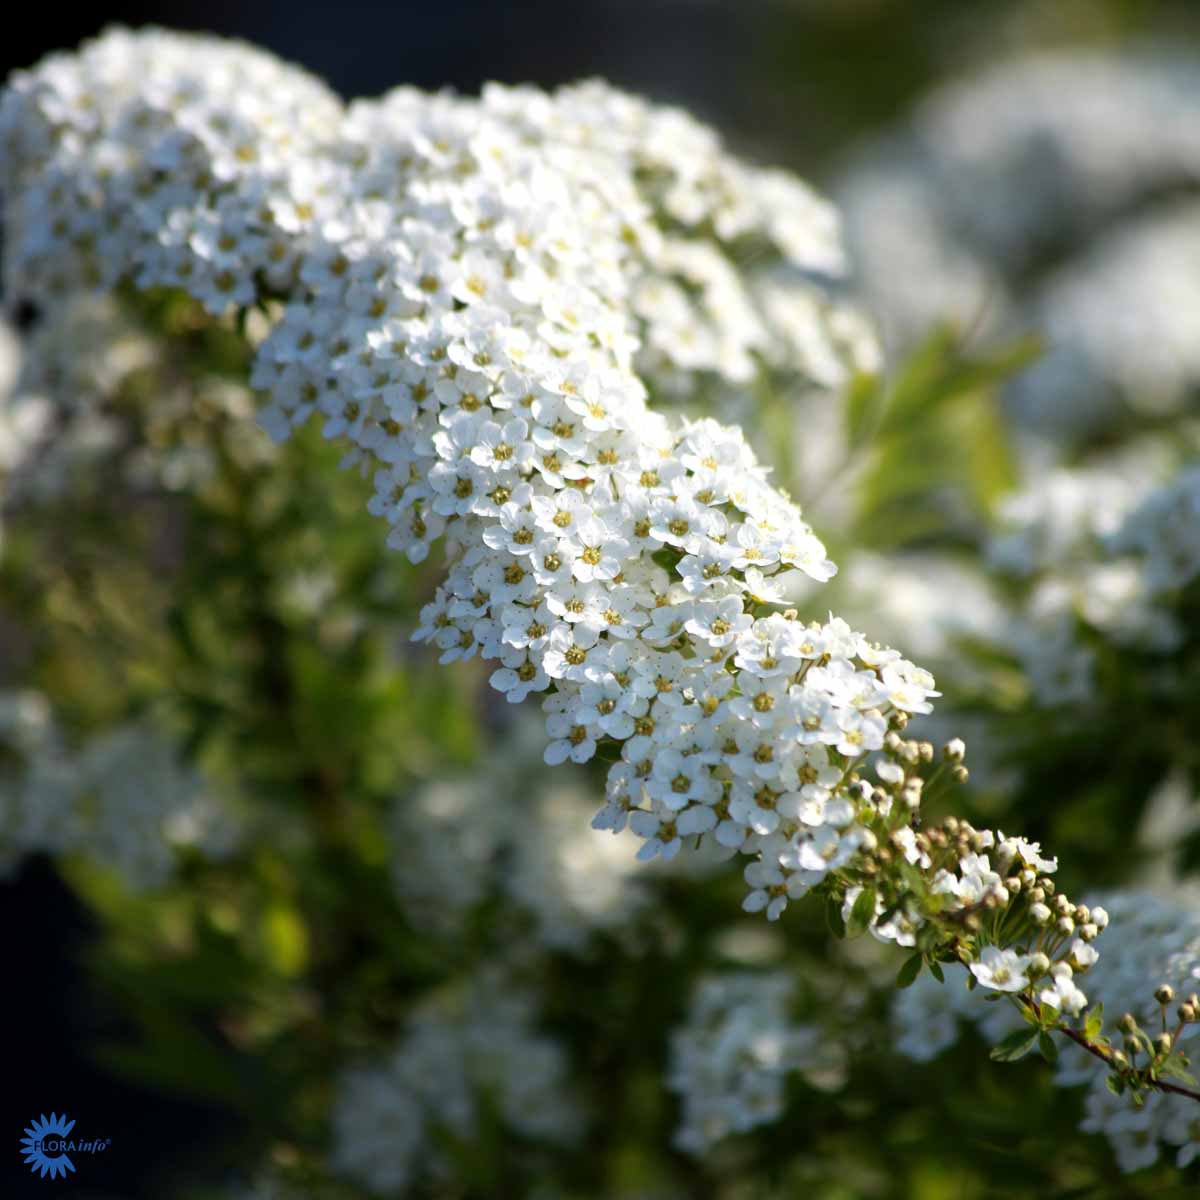 Snedriverbusk – Spiraea Cinerea, "Grefsheim" er en virkelig flot busk med en helt overdådig blomstring, der fuldstændig dækker busken i smukke hvide blomster som hænger ned i klaser langt grenene i en overhængende form